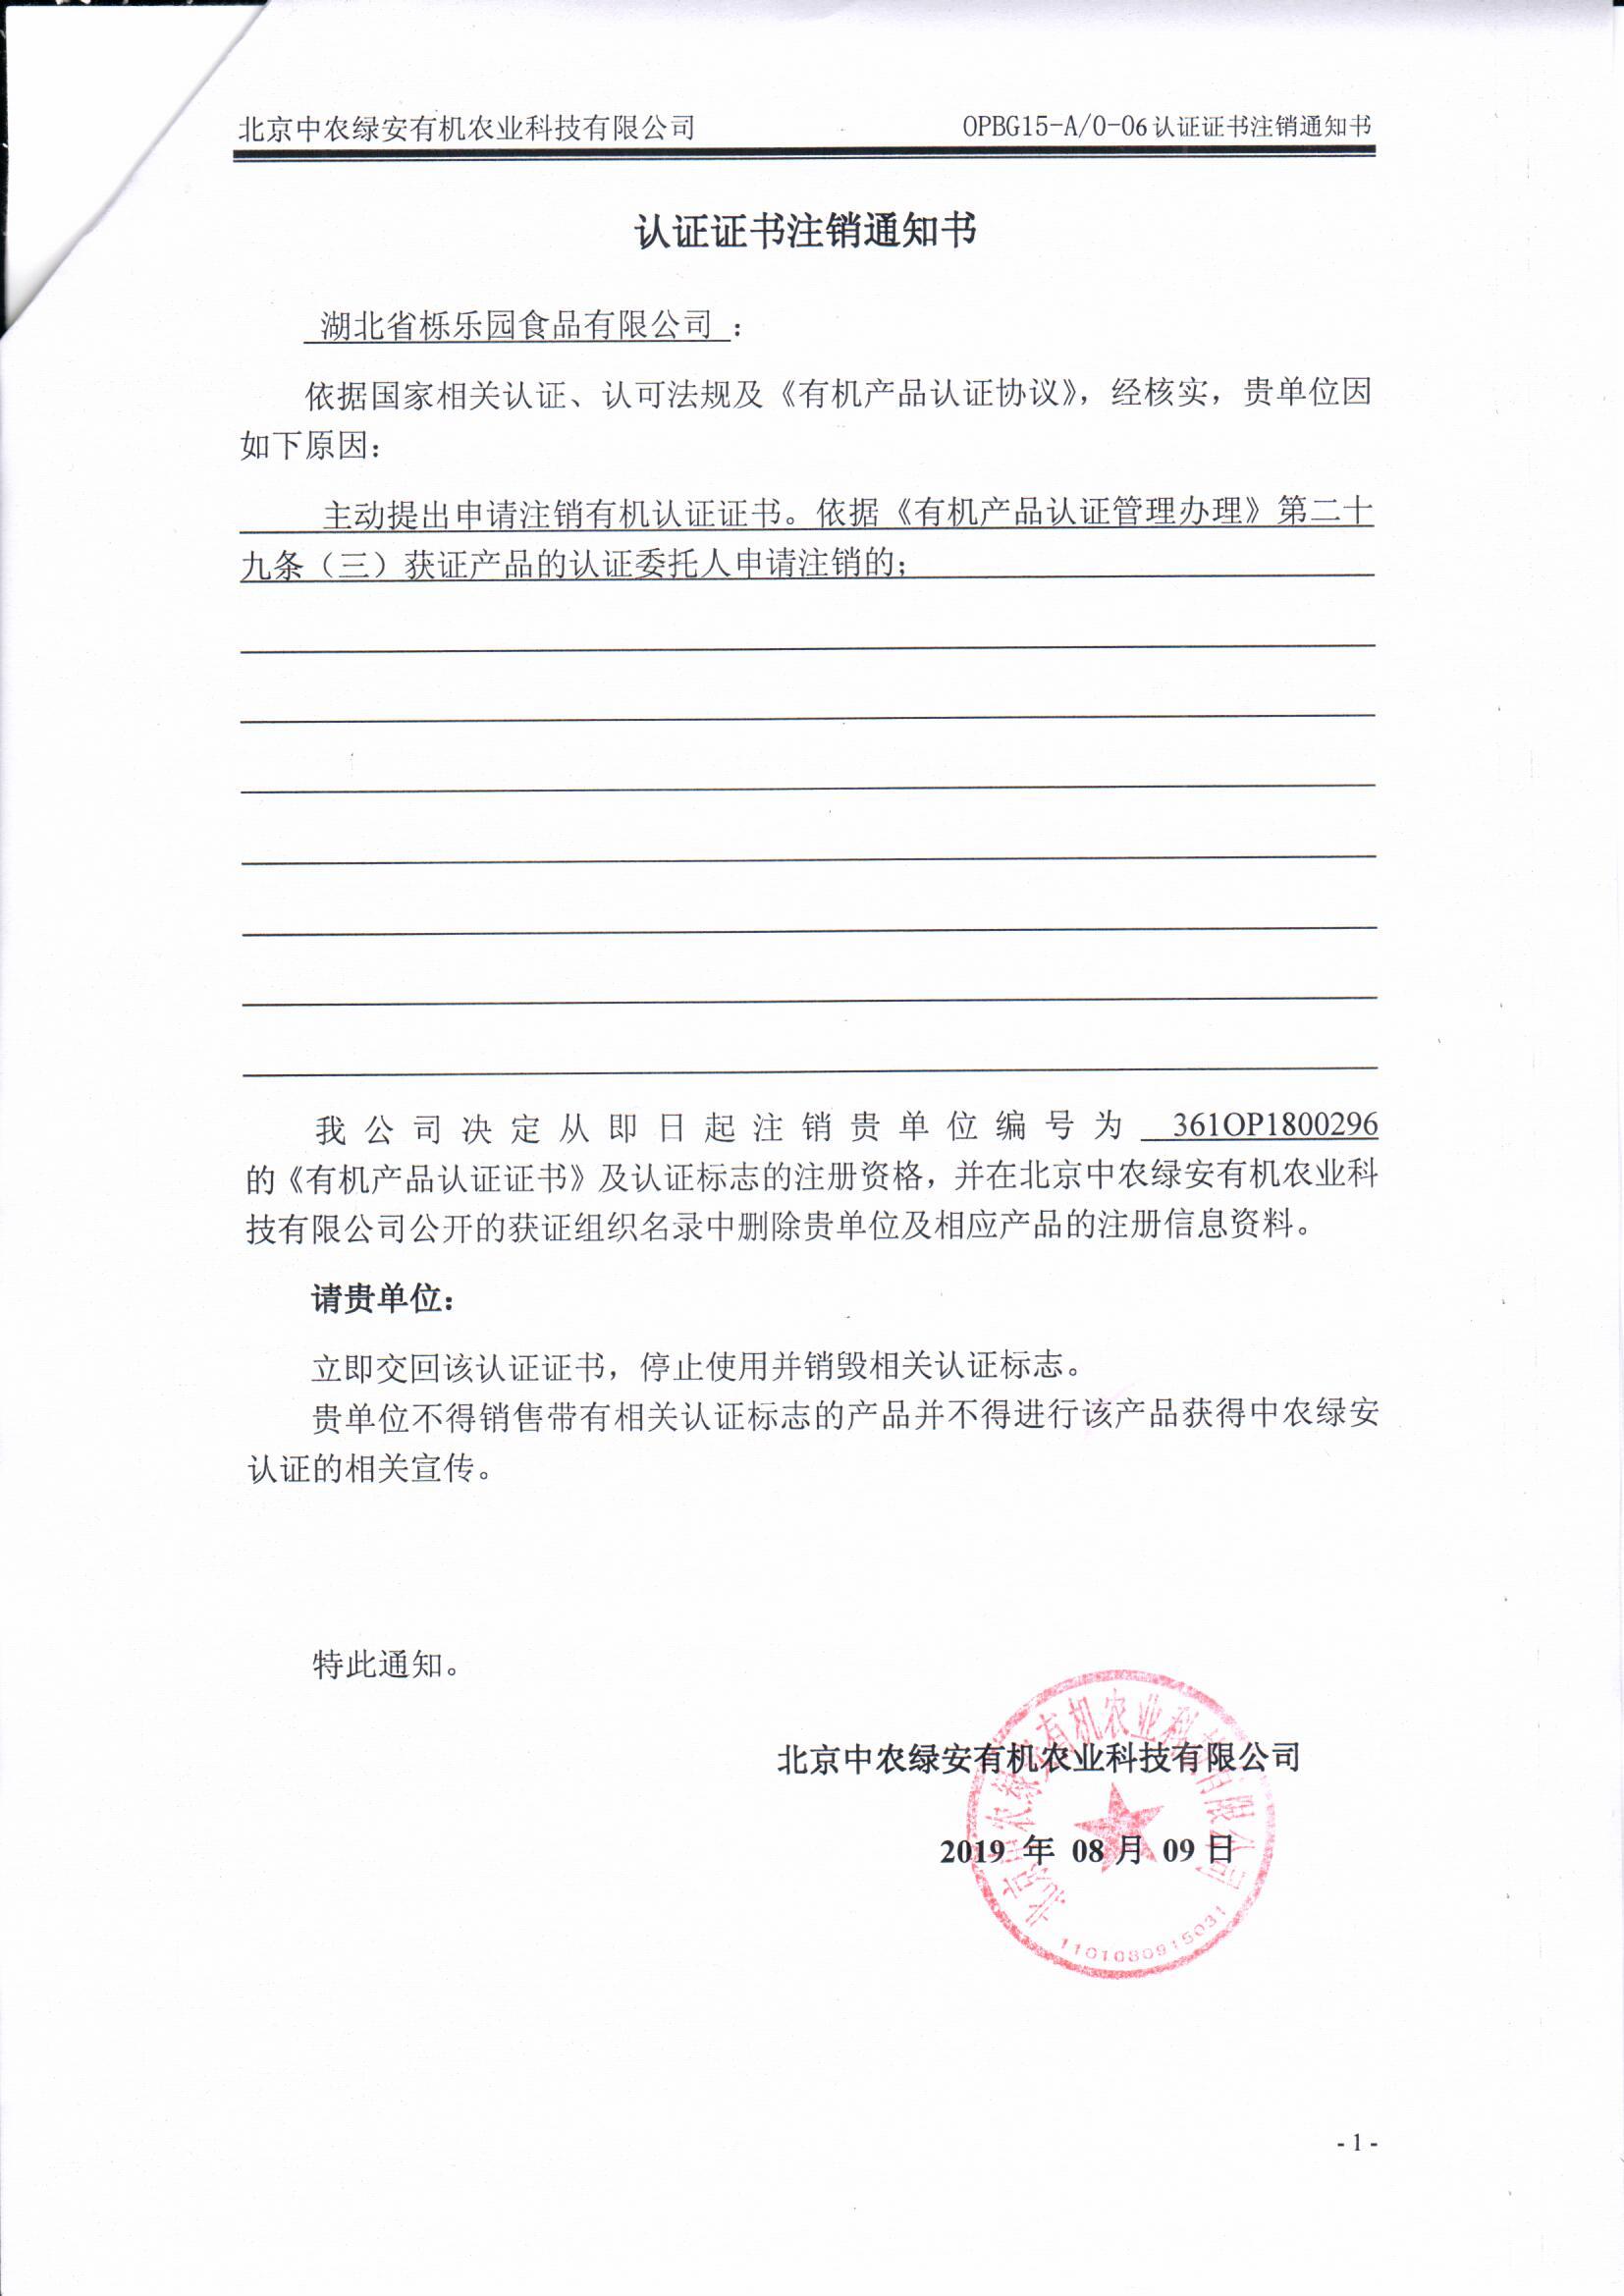 湖北省栎乐园食品有限公司证书注销通知书